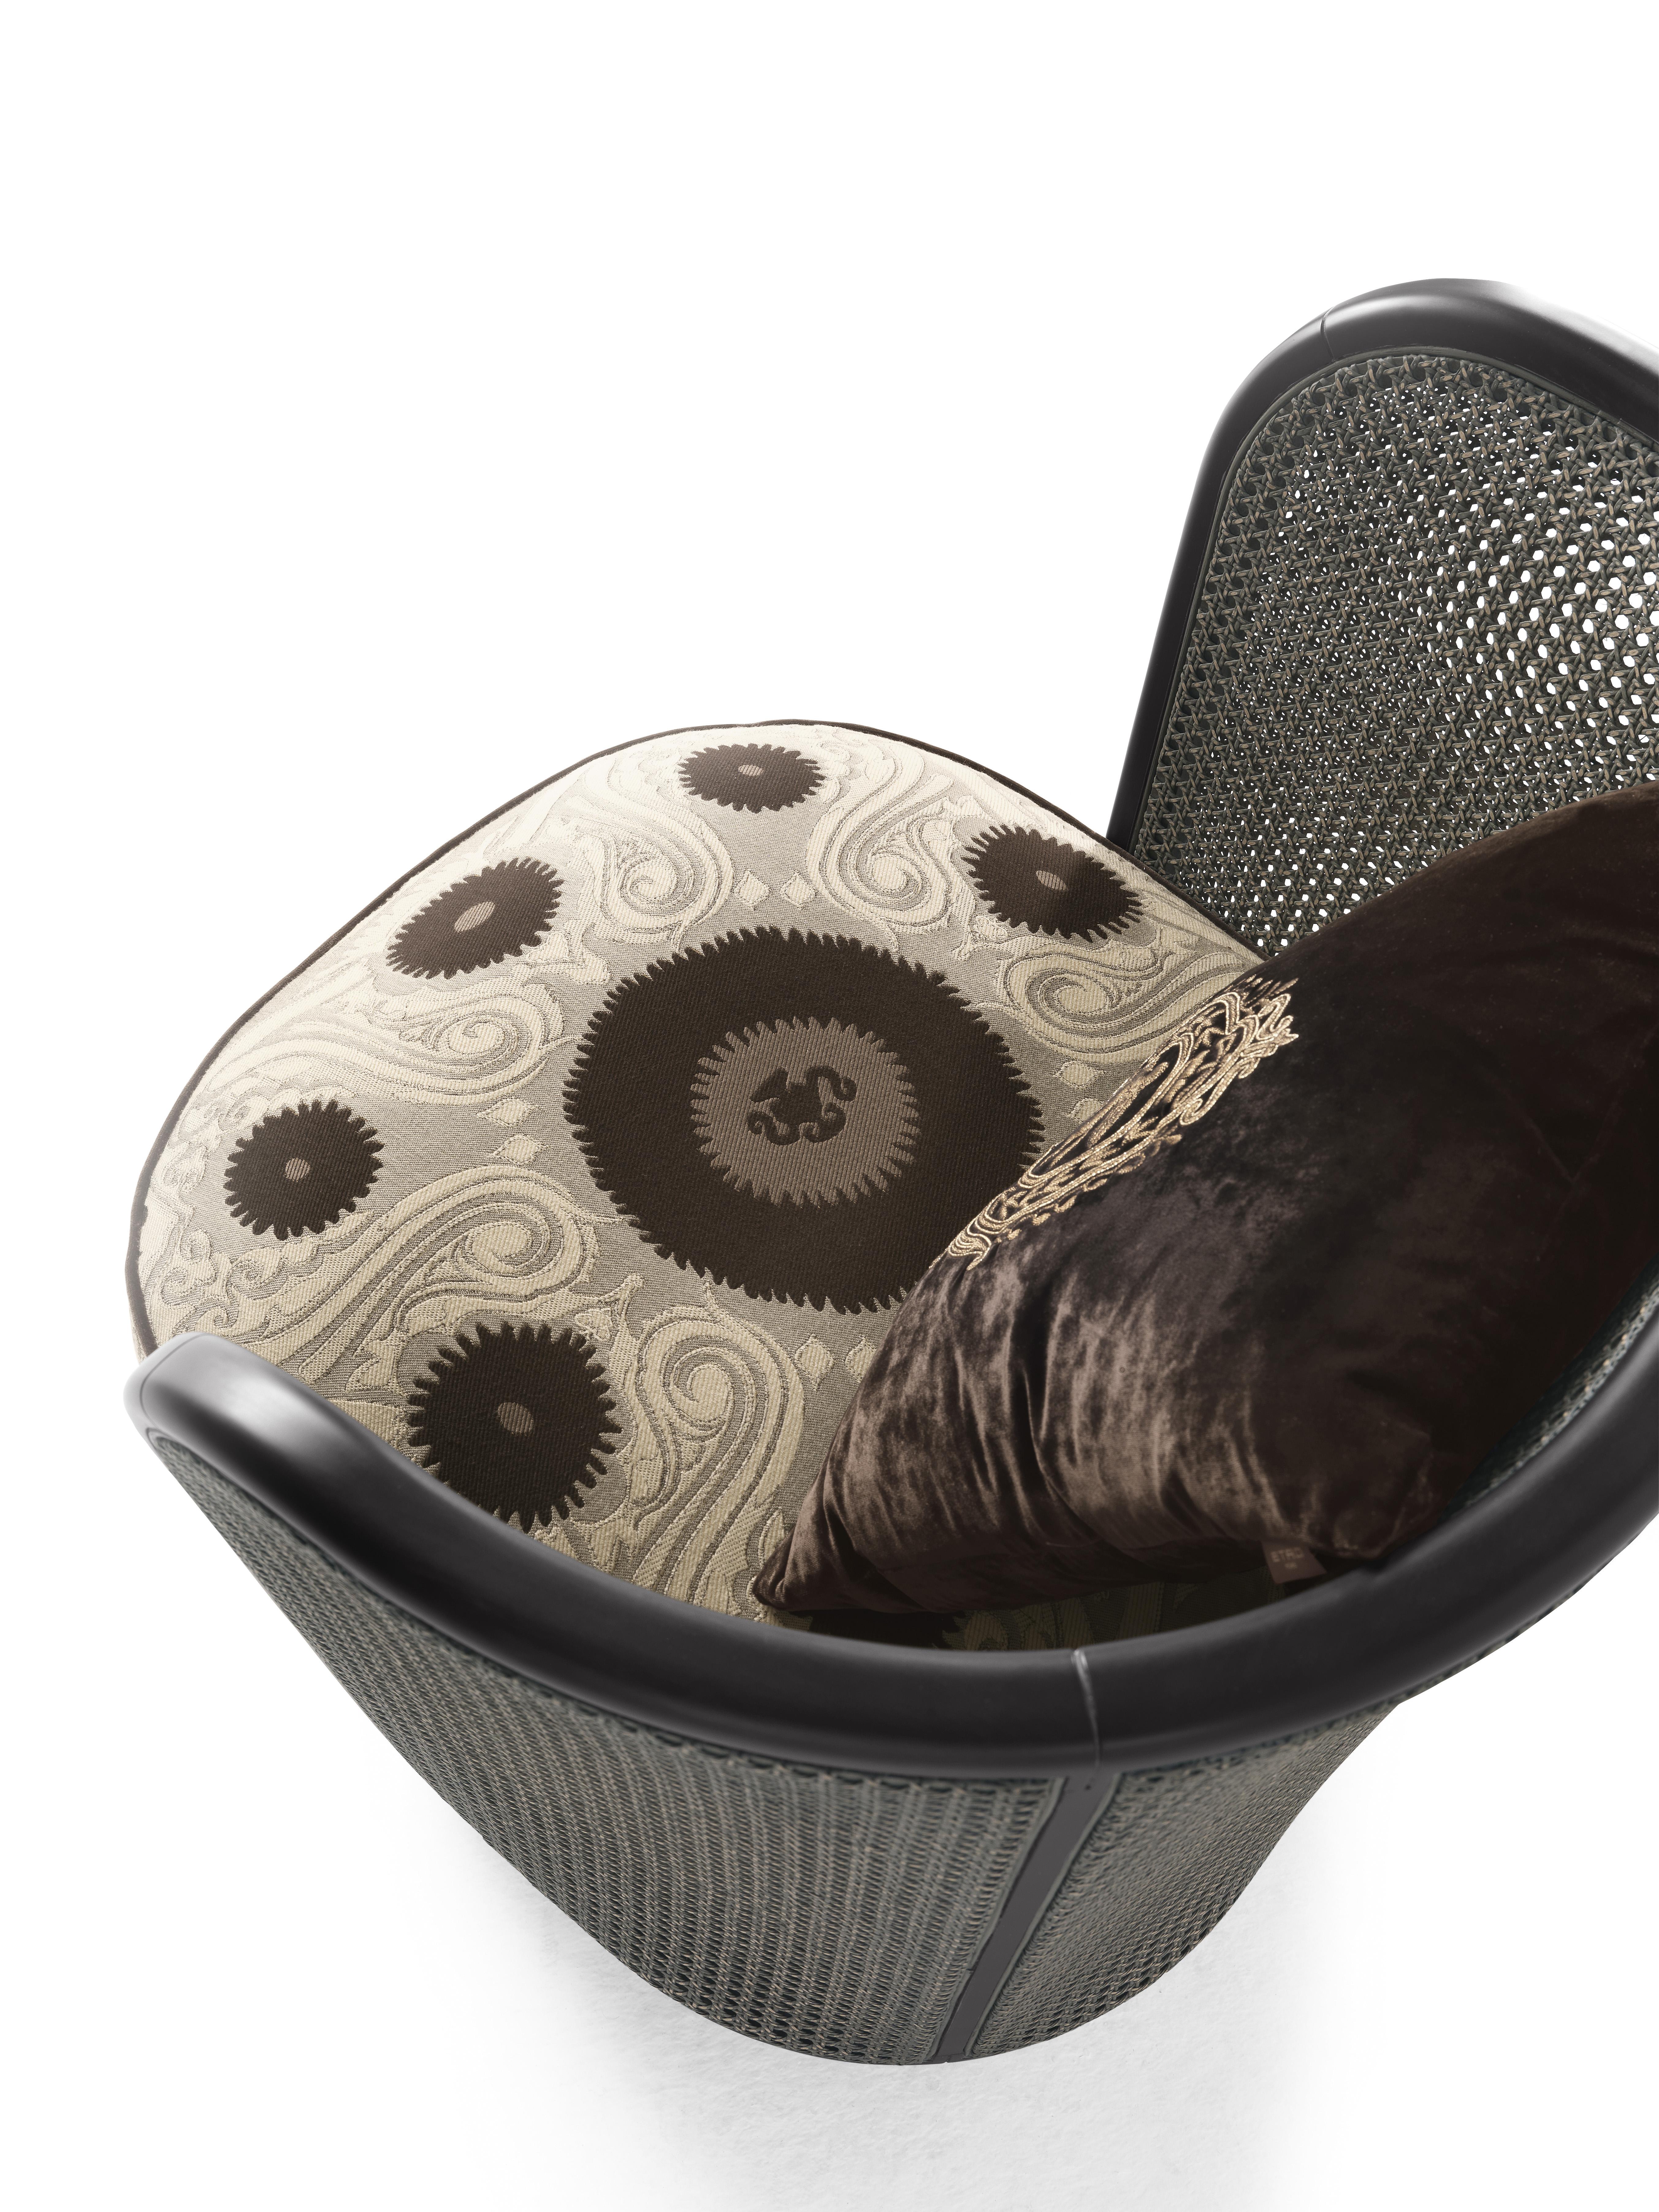 Nomadengeist und Reisevorschläge für den Caral-Sessel.
Das Gestell der Rückenlehne ist aus dunklem, matt gefärbtem Wenge-Holz mit matt gefärbtem Schilfrohr in Smoke Grey, einem neuen und zarten Grauton, gefertigt, während die Polsterung aus